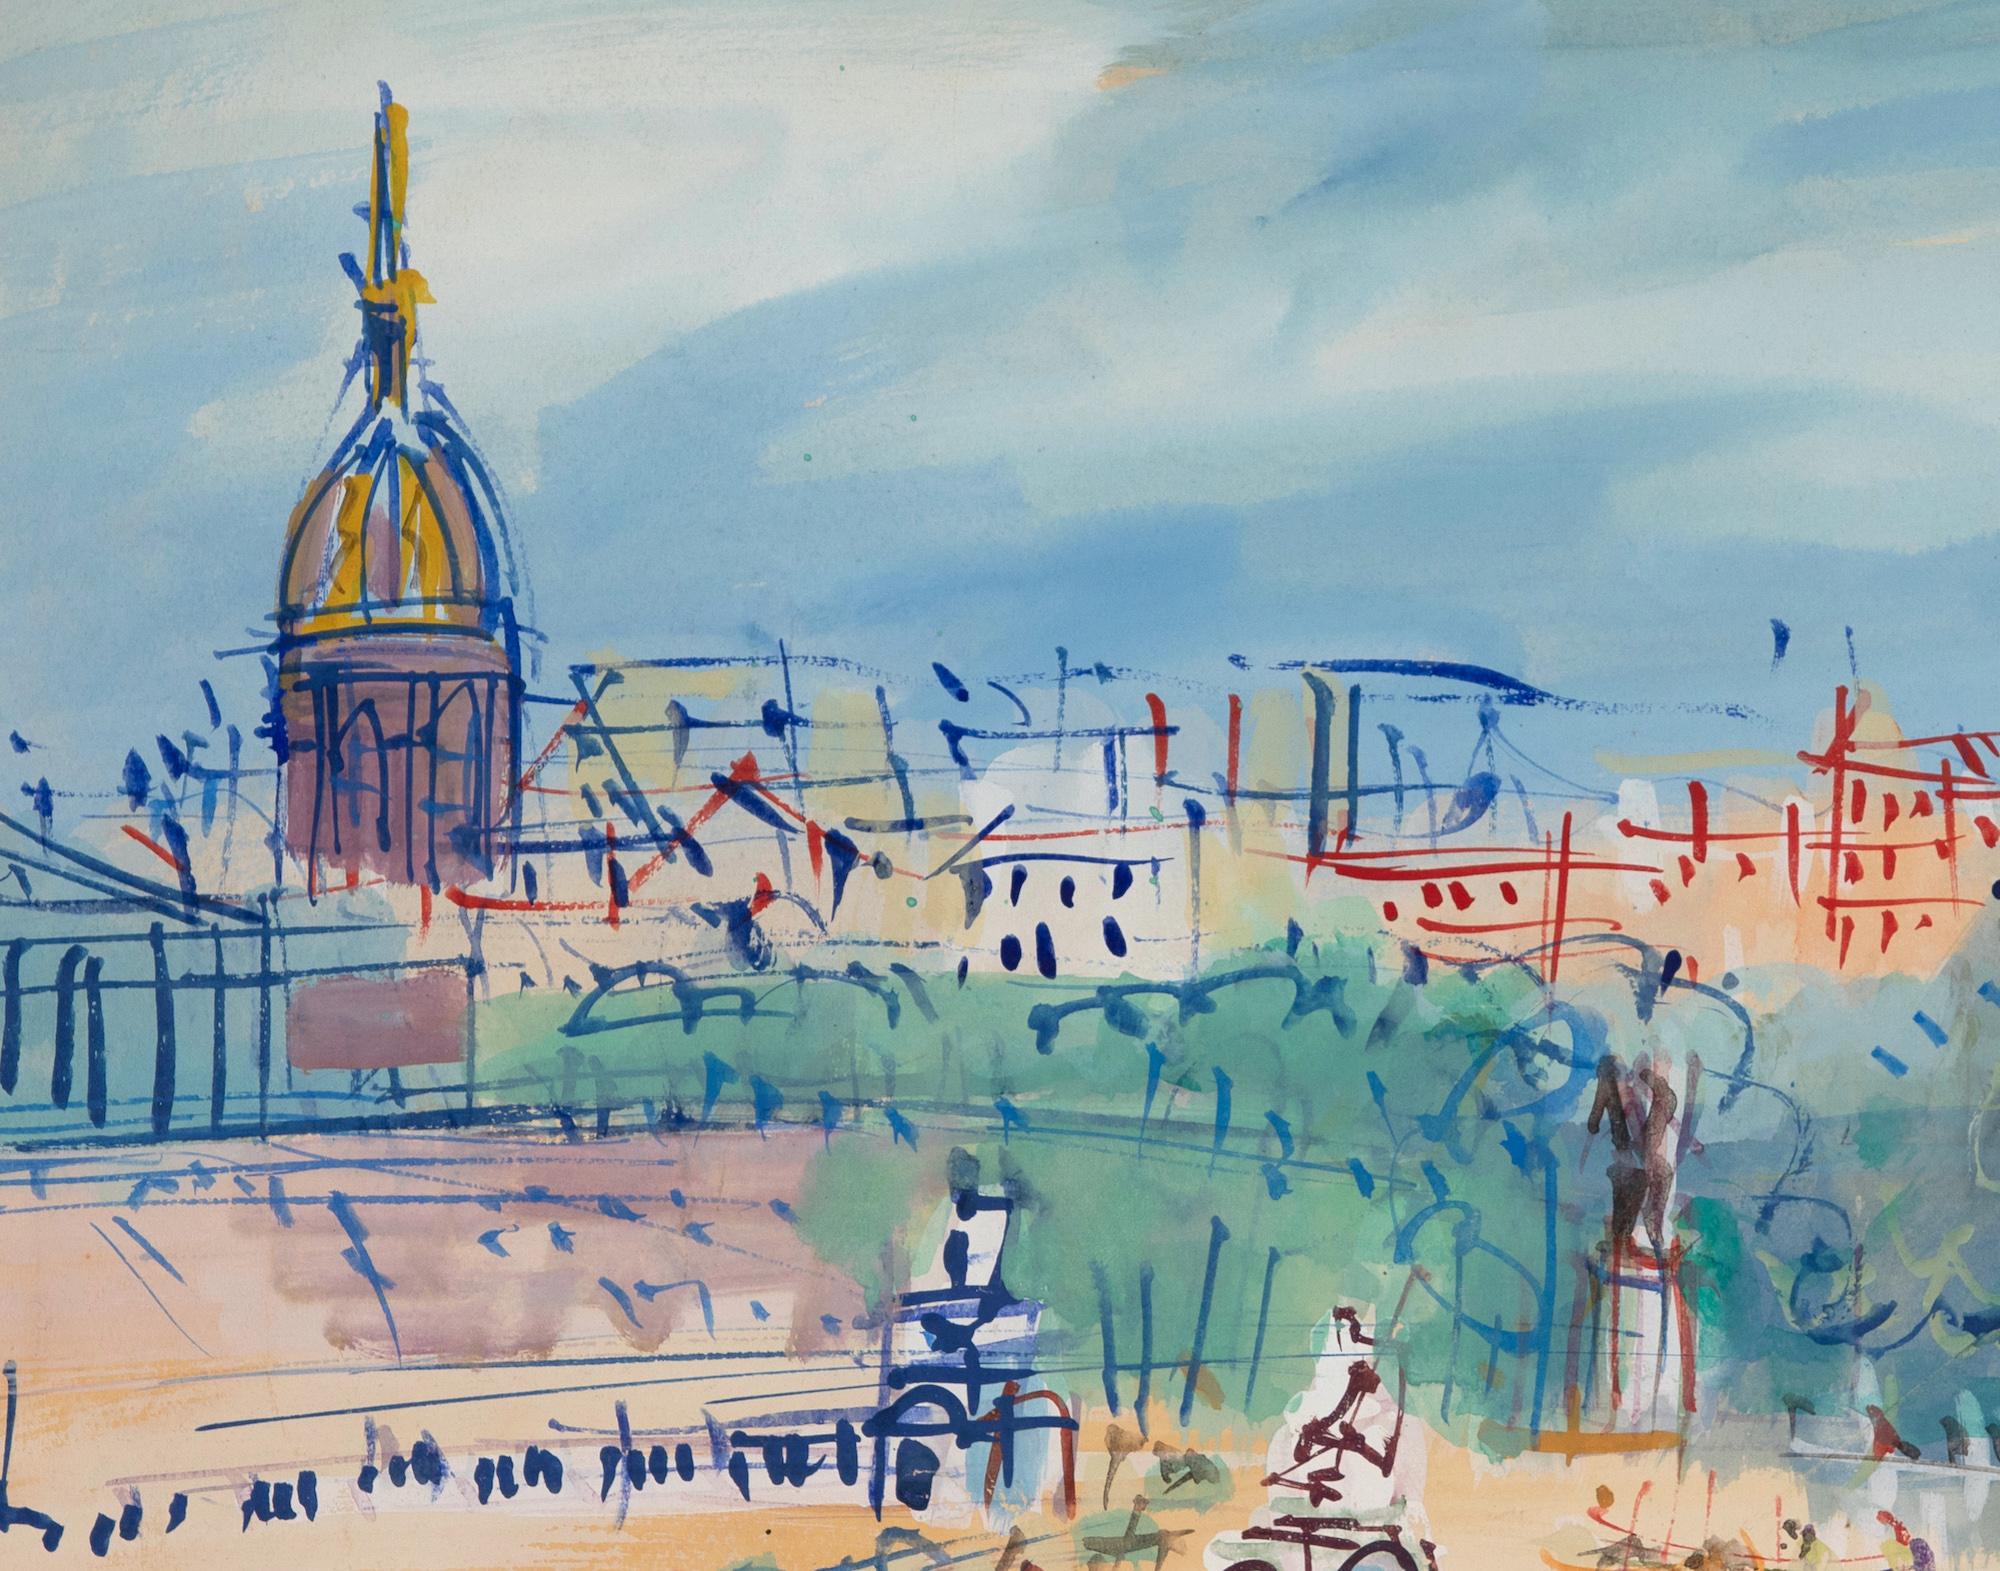 Place de la Concorde by Jean Dufy - Mixed media on paper, Parisian scene For Sale 2